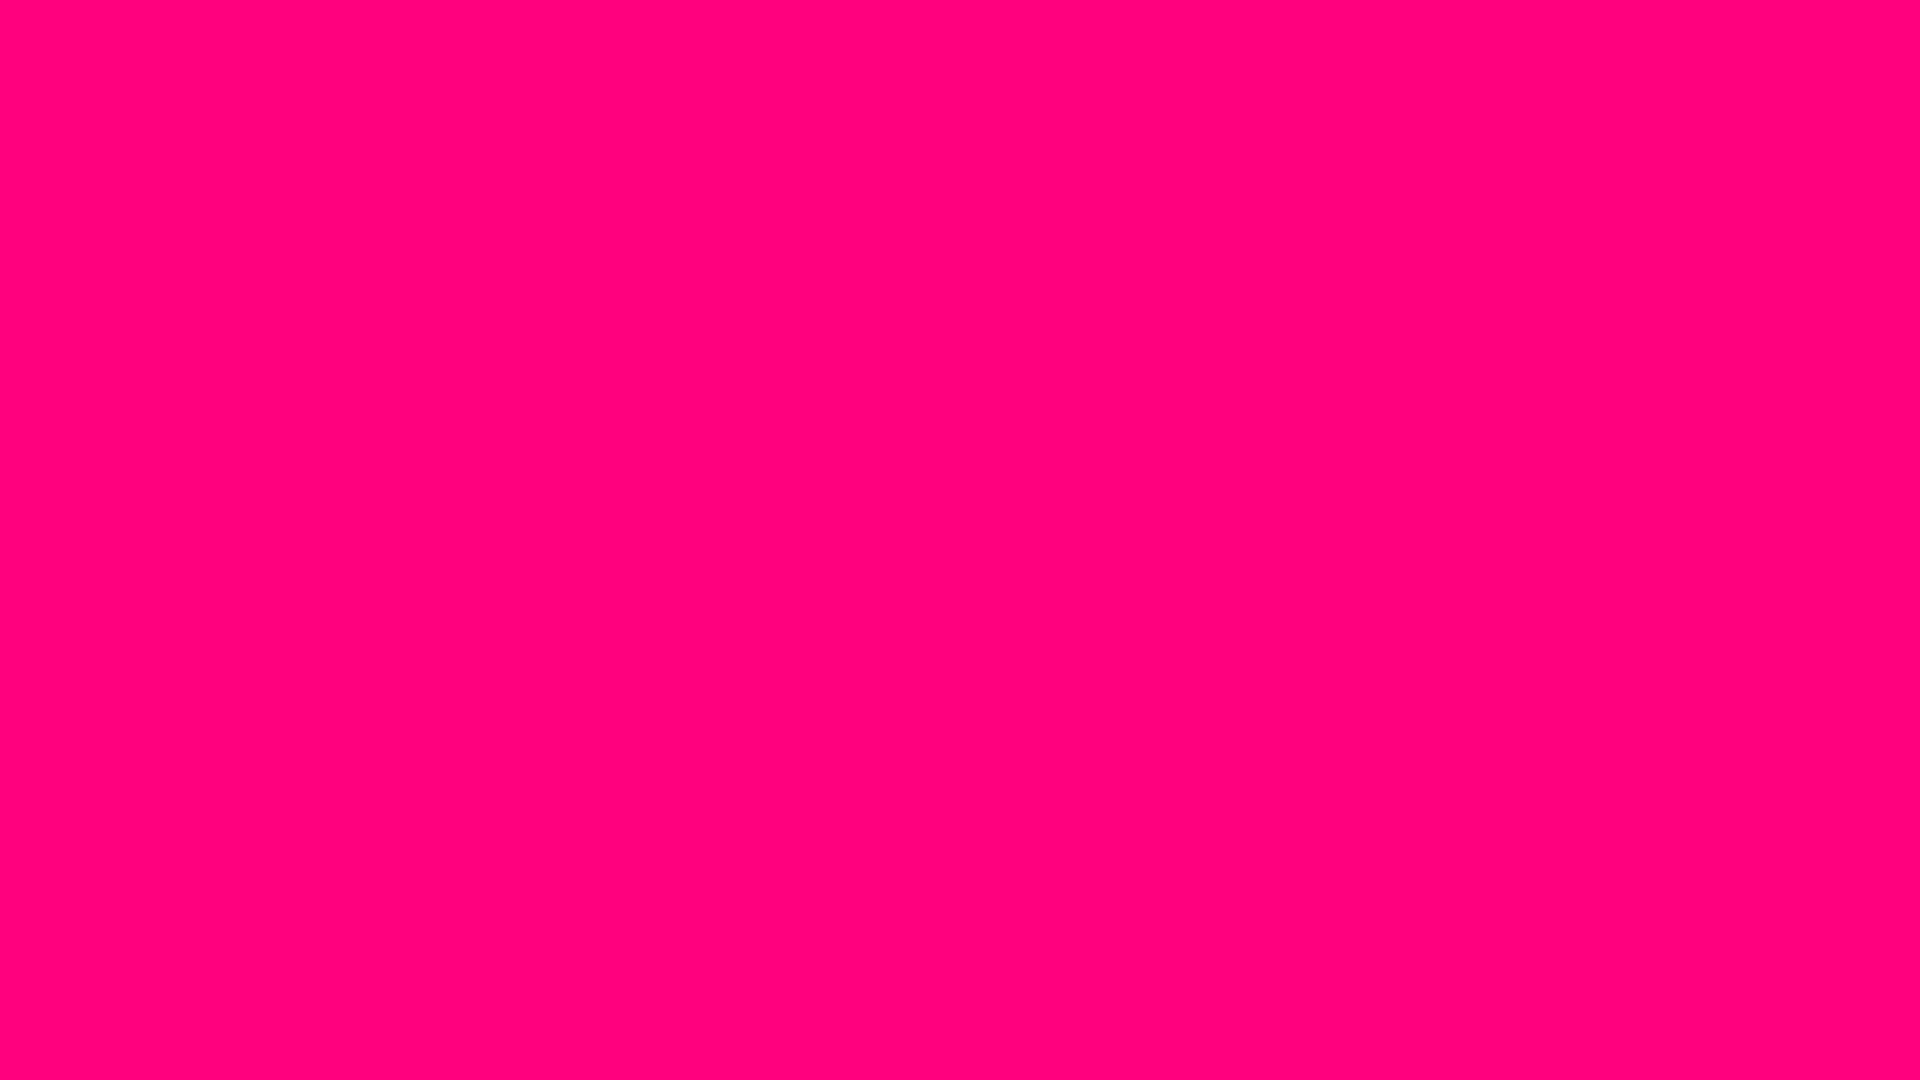 Bộ sưu tập 1000 1920x1080 pink background Đẹp nhất